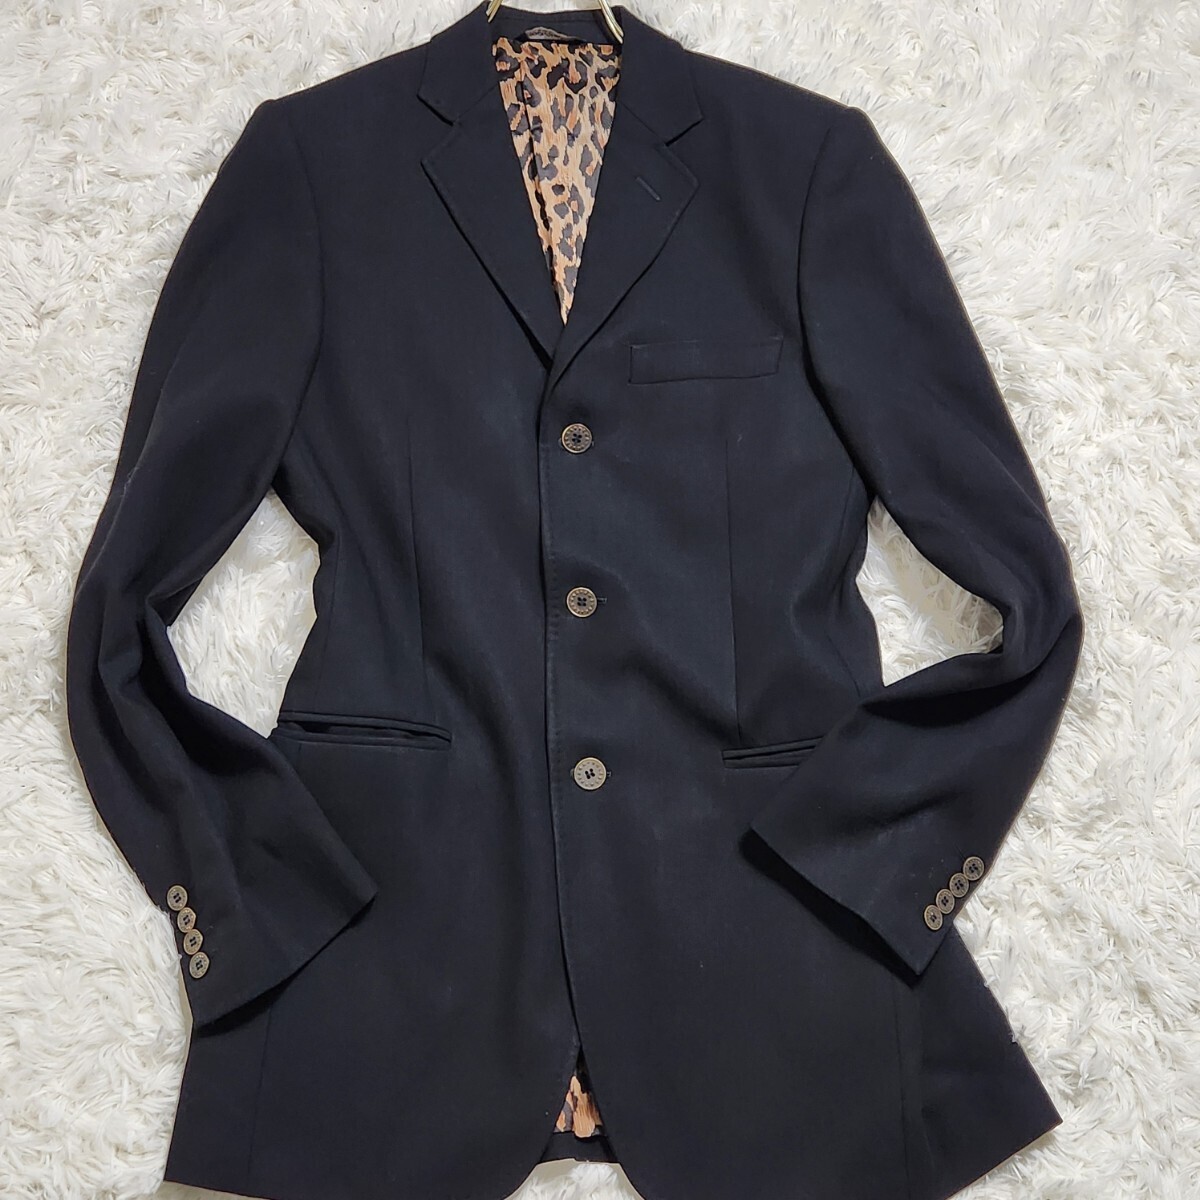  превосходный товар DOLCE&GABBANA [ другой .. присутствие ] Dolce & Gabbana tailored jacket подкладка общий рисунок Leopard леопардовый рисунок черный summer шерсть 